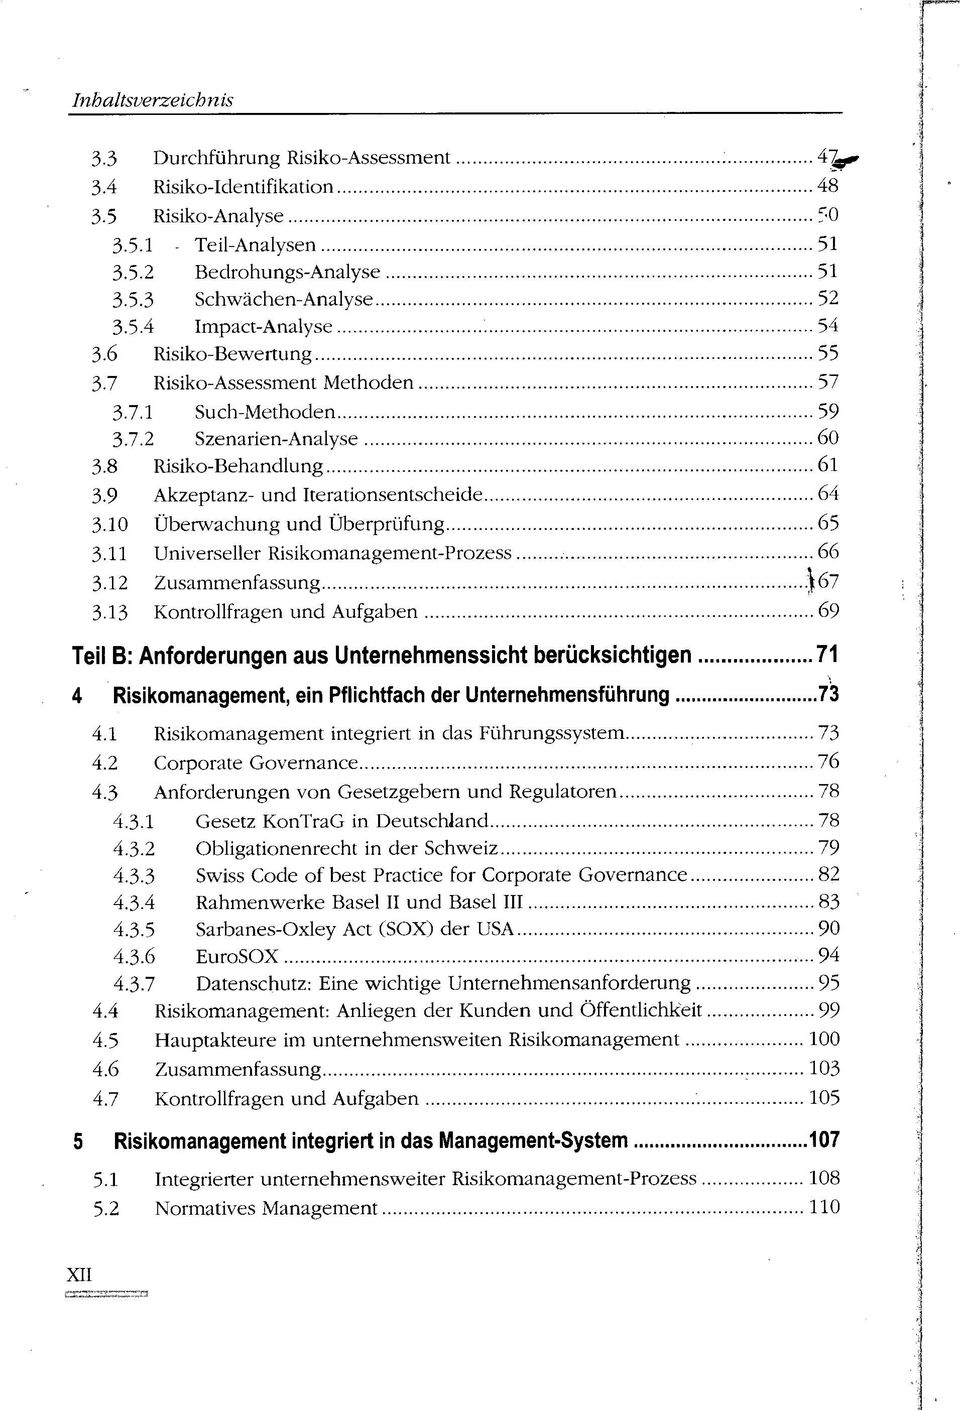 10 Überwachung und Überprüfung 65 3.11 Universeller Risikomanagement-Prozess 66 3.12 Zusammenfassung.)t67 3.